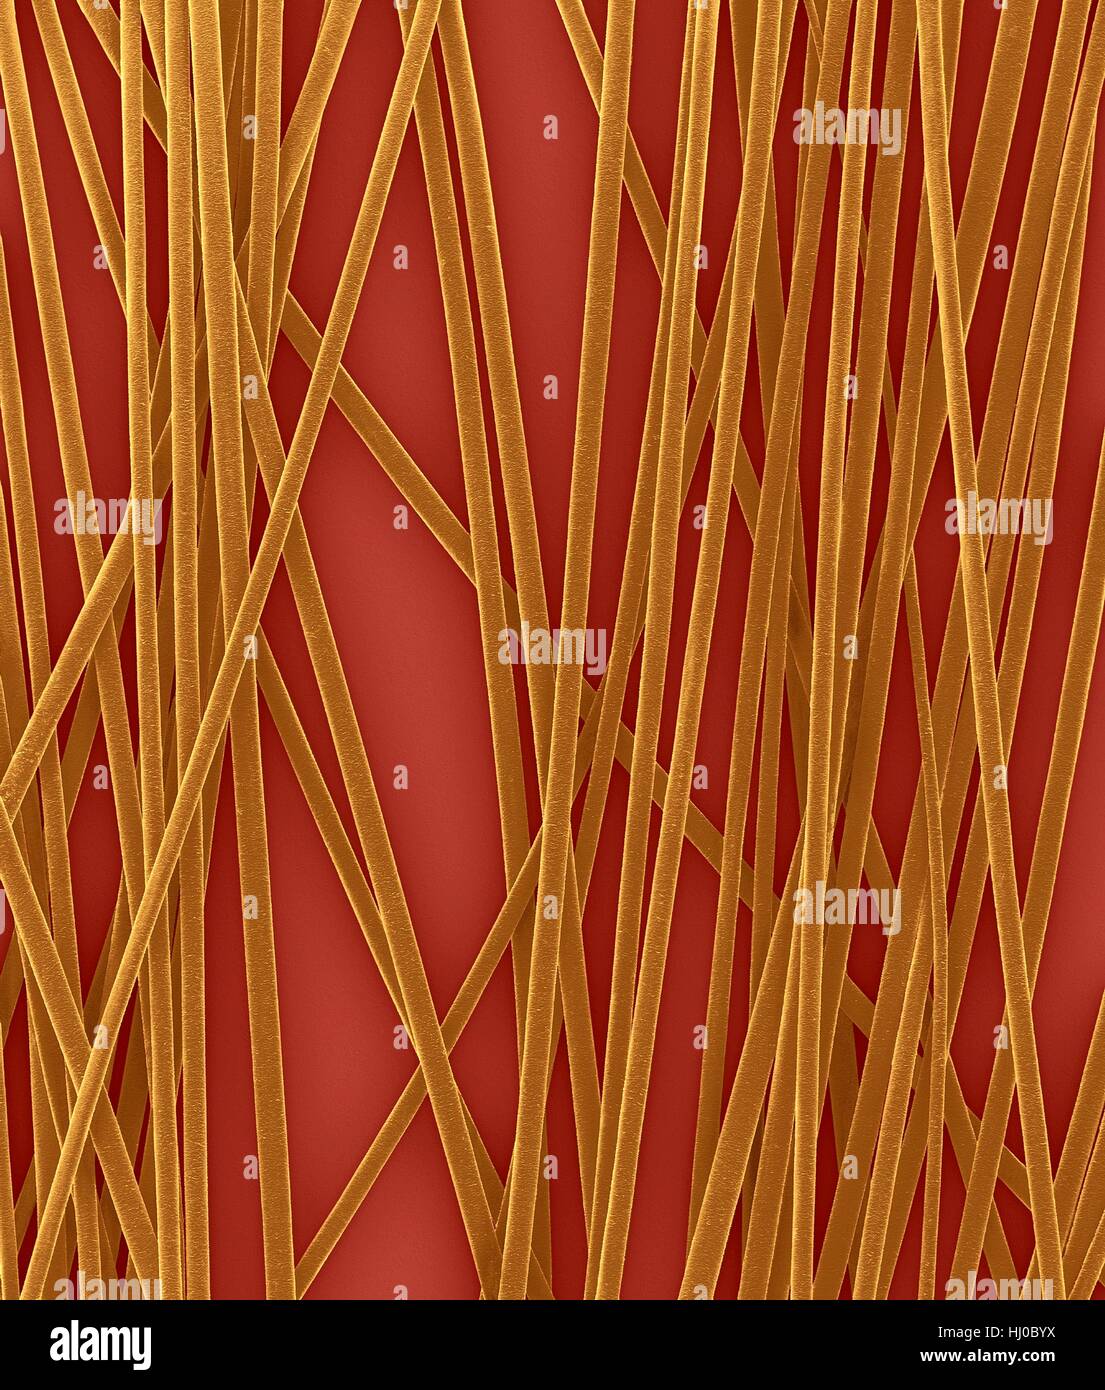 Les arbres de cheveux humains de la tête,couleur de l'analyse des électrons Microphotographie (SEM).La couche externe des cheveux (la cuticule) a écailles superposées de la kératine.Ces balances sont censés prévenir les poils à nattes ensemble.le cheveu est composé de protéine fibreuse appelée la kératine des cheveux en interne.est divisé en trois gaines concentriques (couches) appelé cortex medulla,cuticule externe.sèche n'est pas le tissu vivant.Les cheveux se développent à partir de la racine des cheveux (ampoule) incrustée dans la peau.La croissance de cheveux se produit lorsque les cellules de l'épiderme se diviser à base des cheveux.L'ampoule n'est pas le tissu vivant.grossissement : X6 lors de l'axe le plus court imprimé à 25 millimètres. Banque D'Images